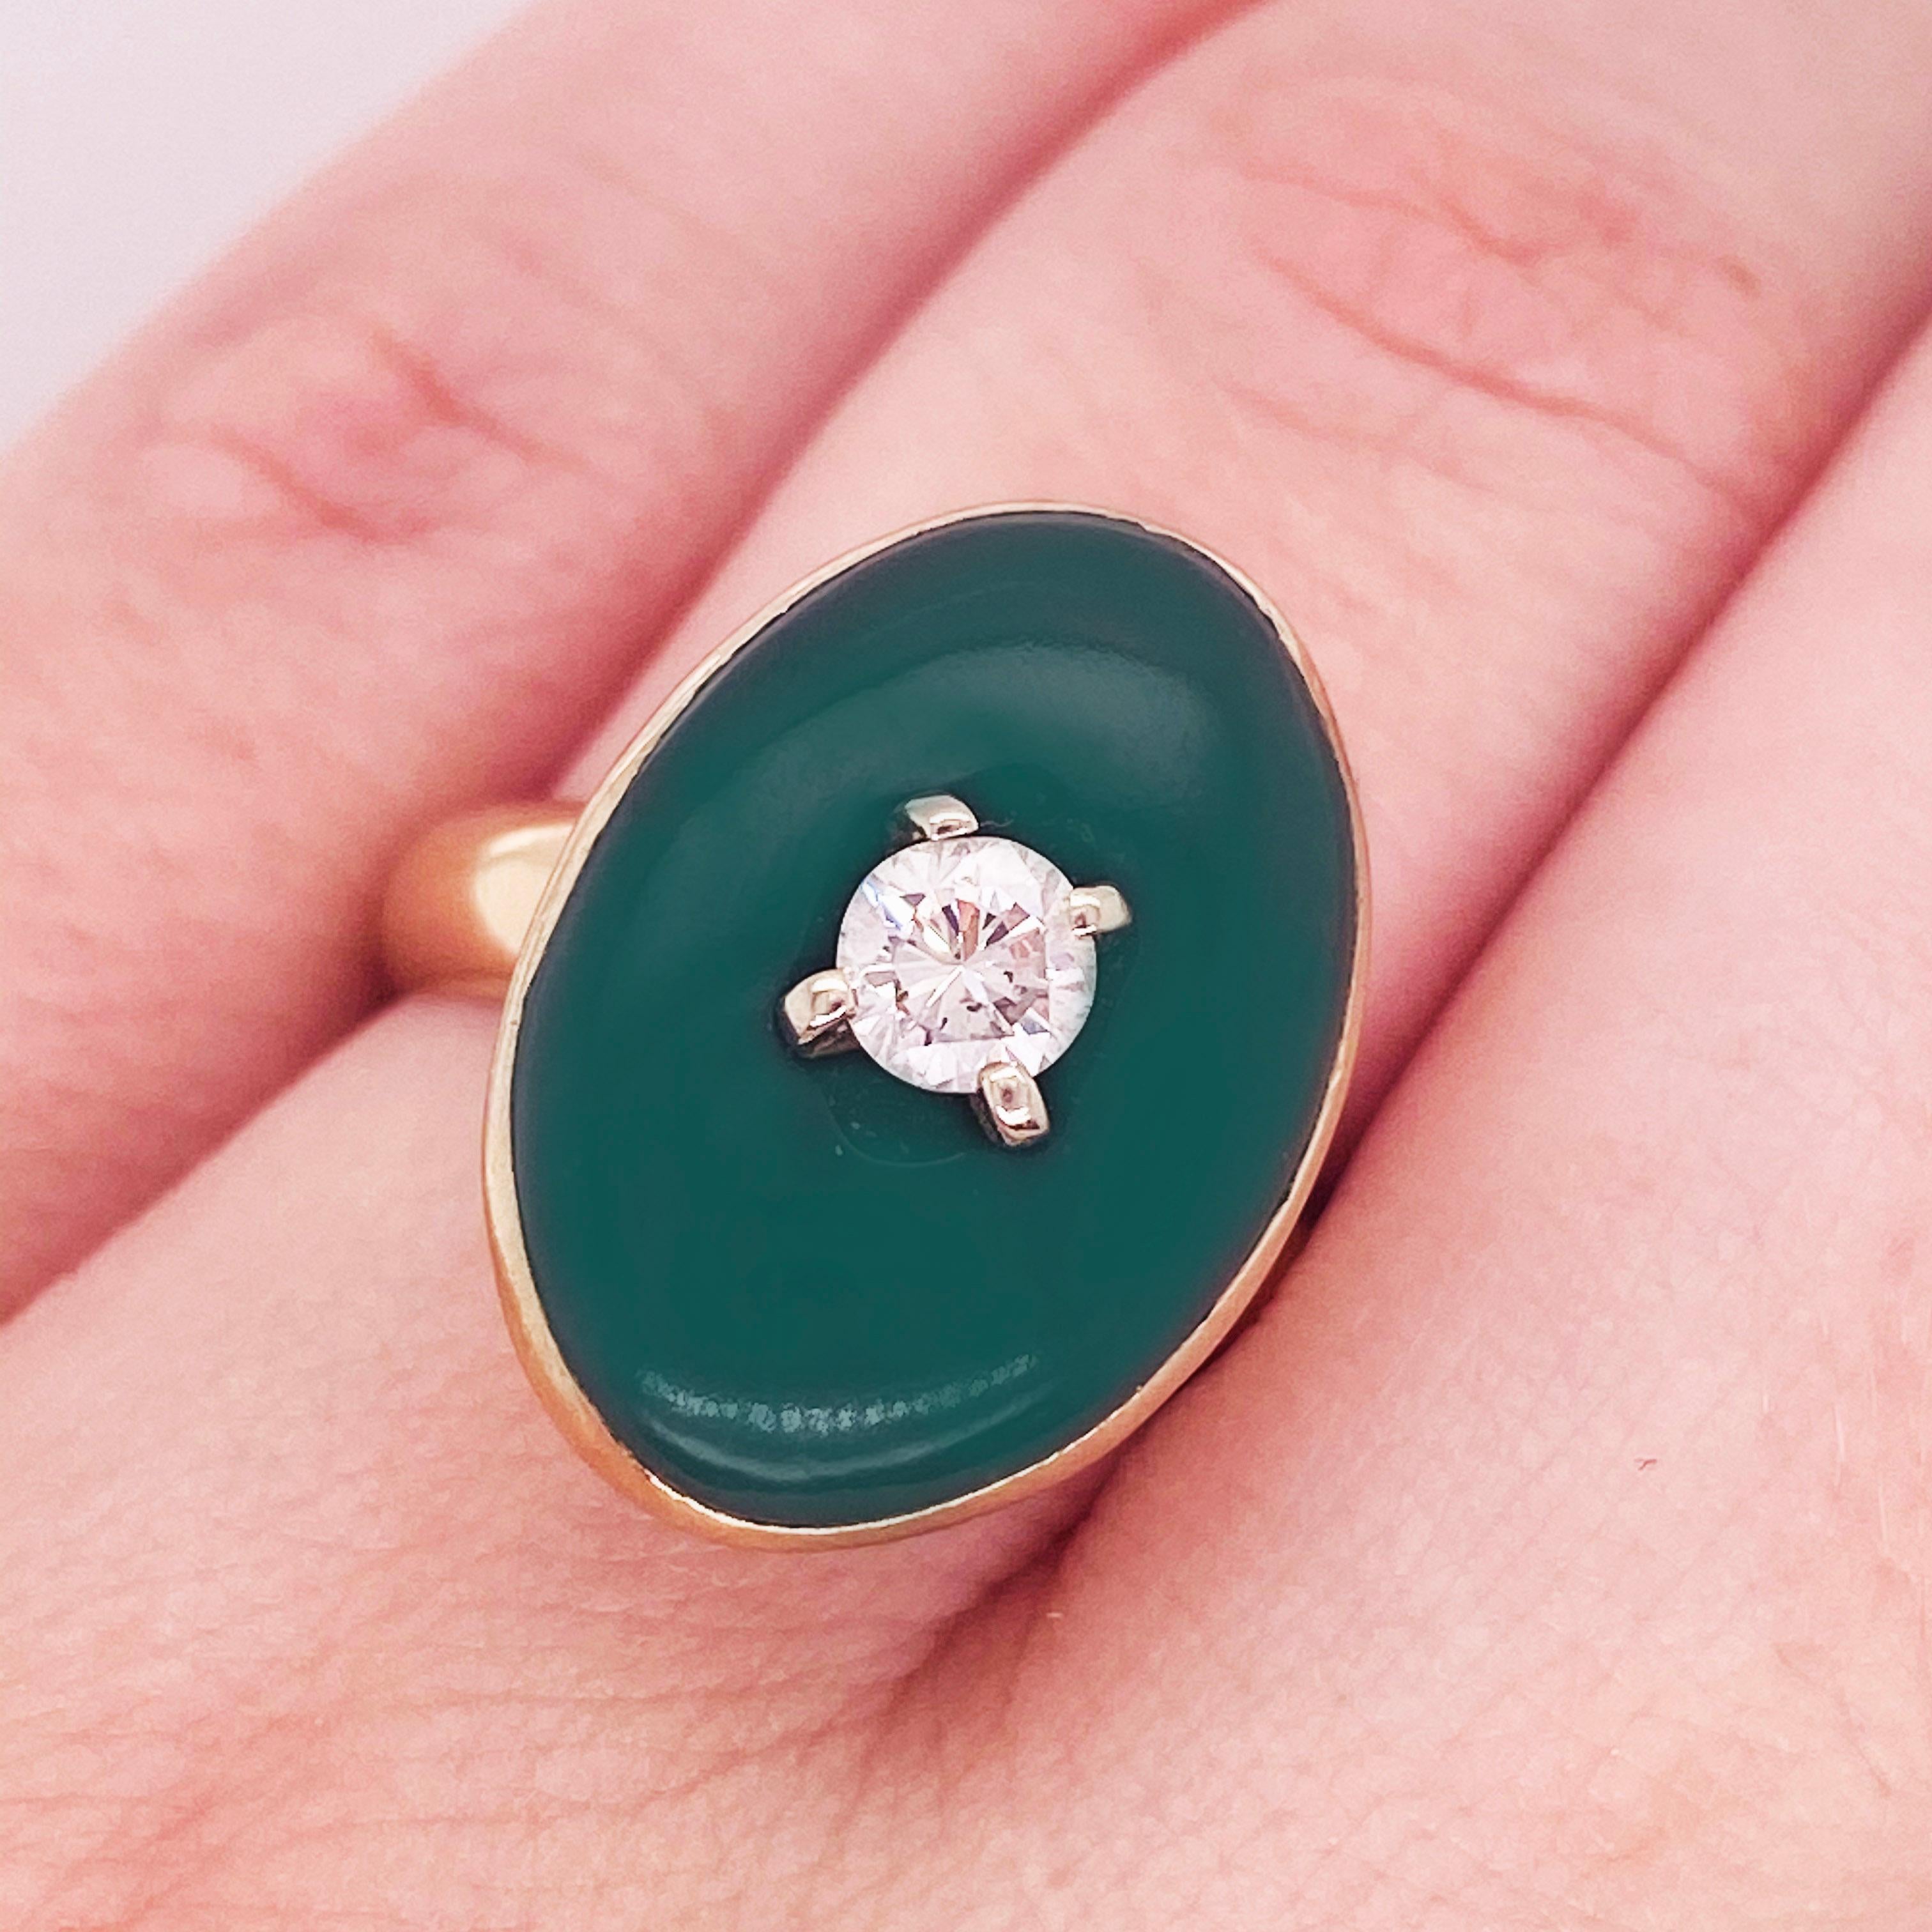 Circa 1975. Was diesen Jade-Ring so erstaunlich macht, ist das Oval und die Lünettenfassung. In der Mitte der Jade ist ein wunderschöner, großer Diamant eingebohrt! Die Details zu diesem Ring sind unten aufgeführt:
Metallqualität: 14K